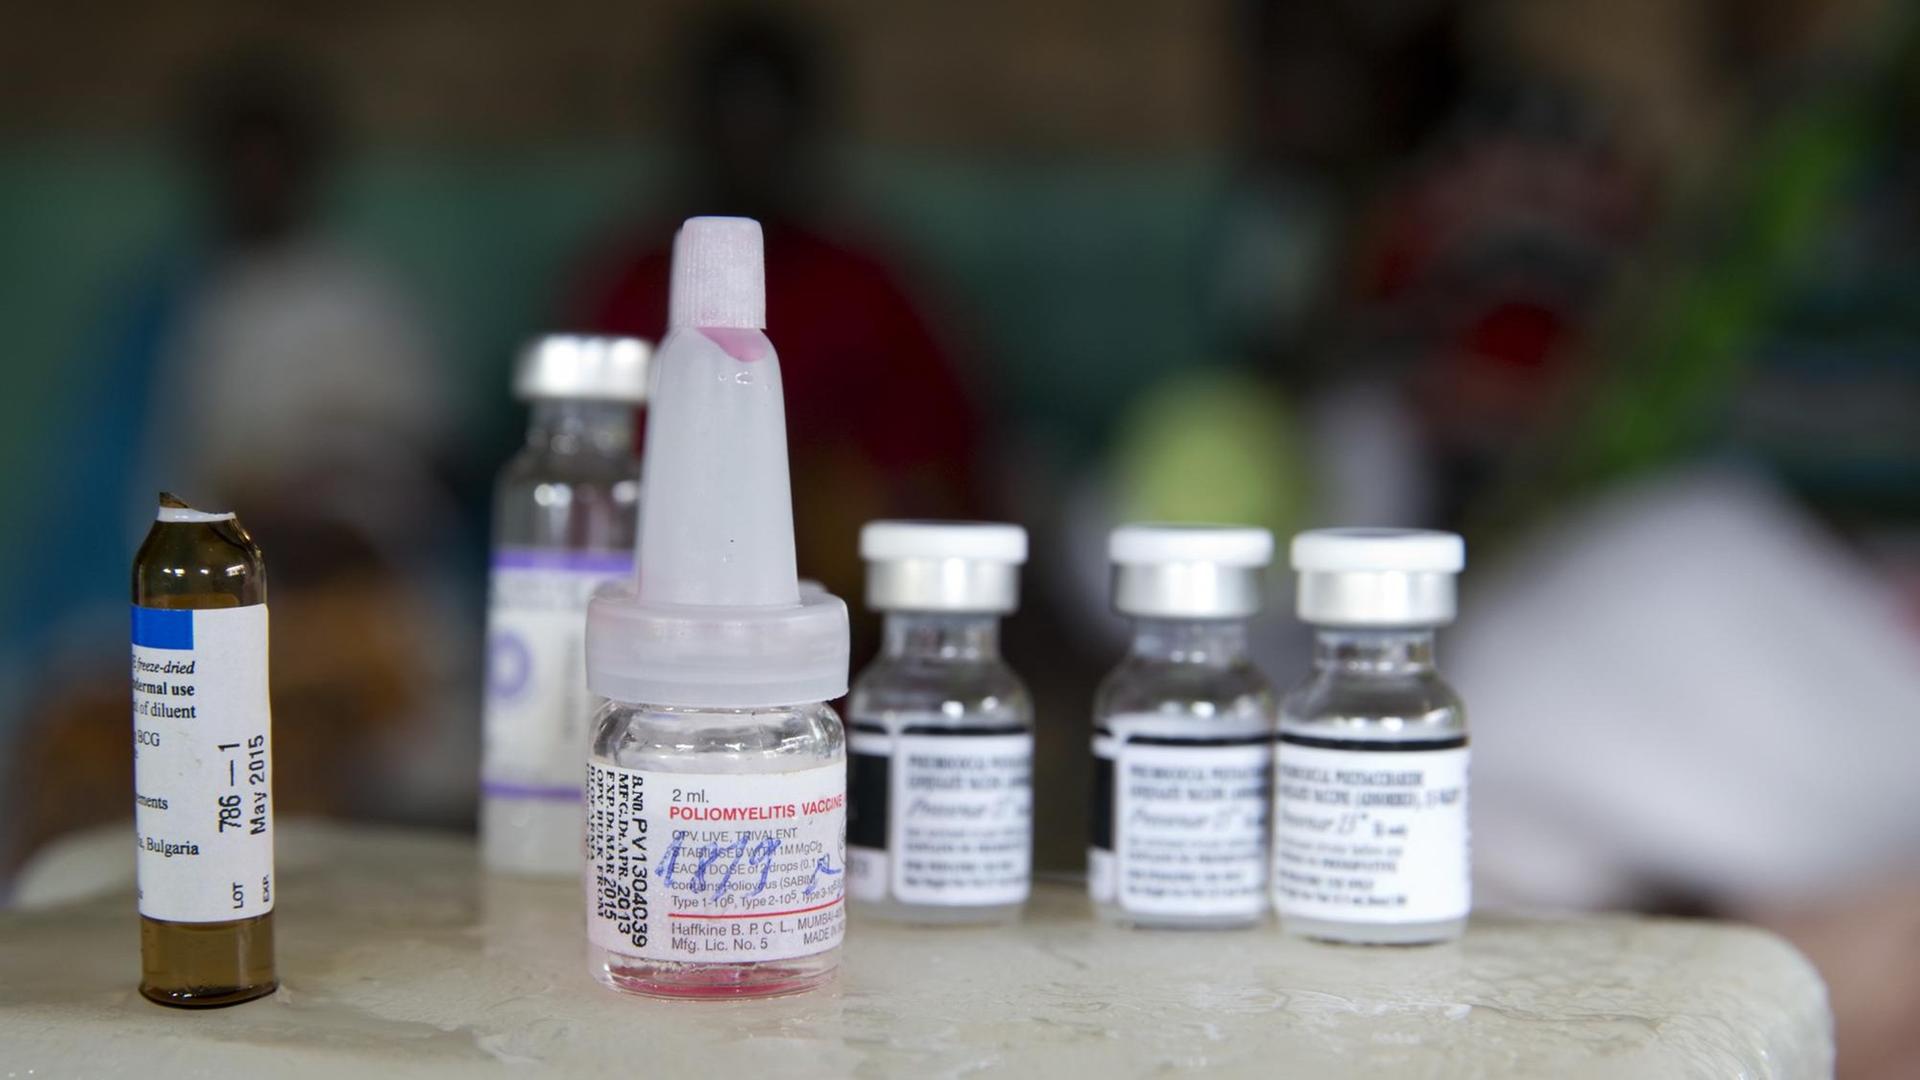 New York - Polioviren im Abwasser nachgewiesen - Bill Gates spricht von besorgniserregendem Befund